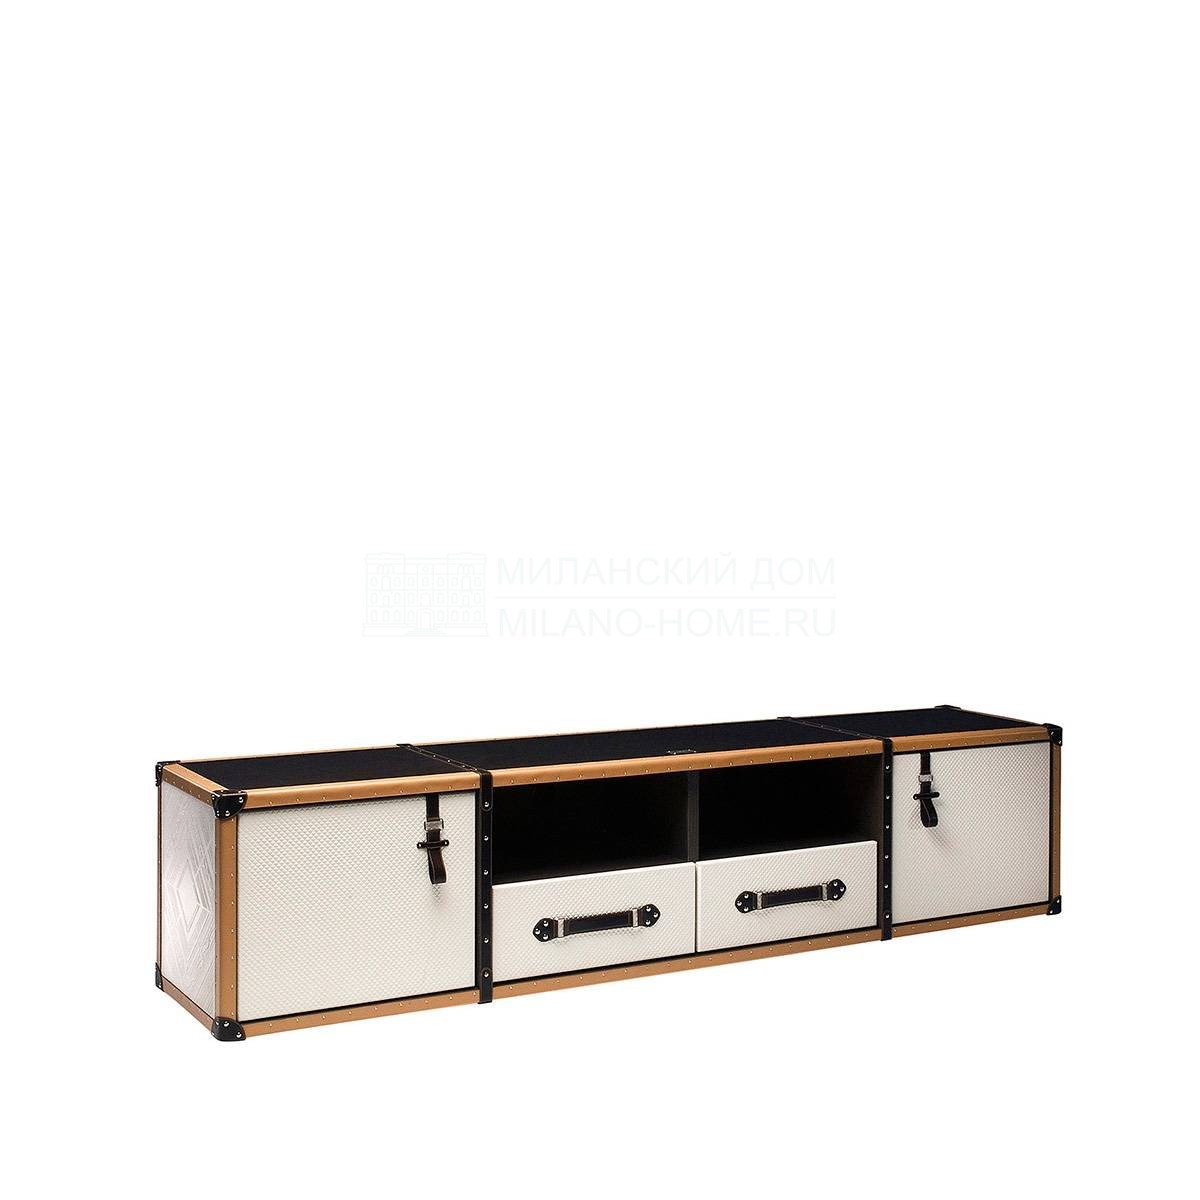 Мебель для ТВ Traveler/A0705 из Испании фабрики COLECCION ALEXANDRA